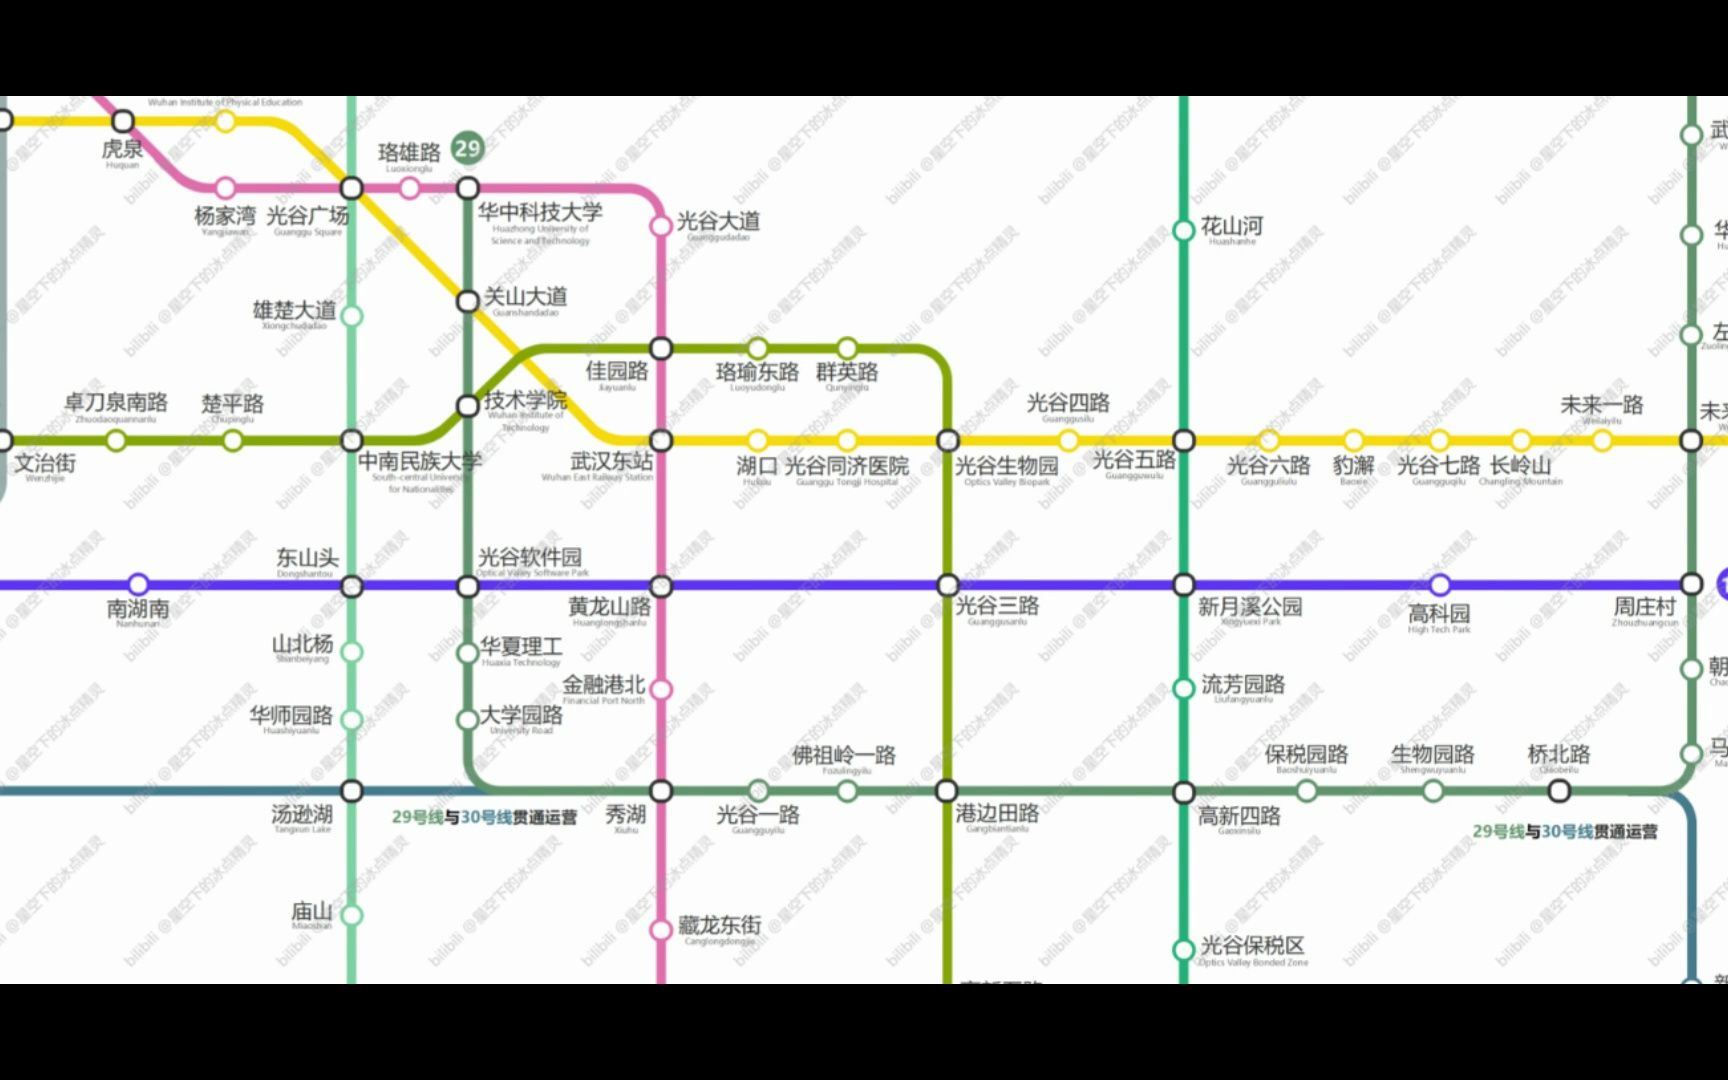 武汉地铁2030年规划图图片